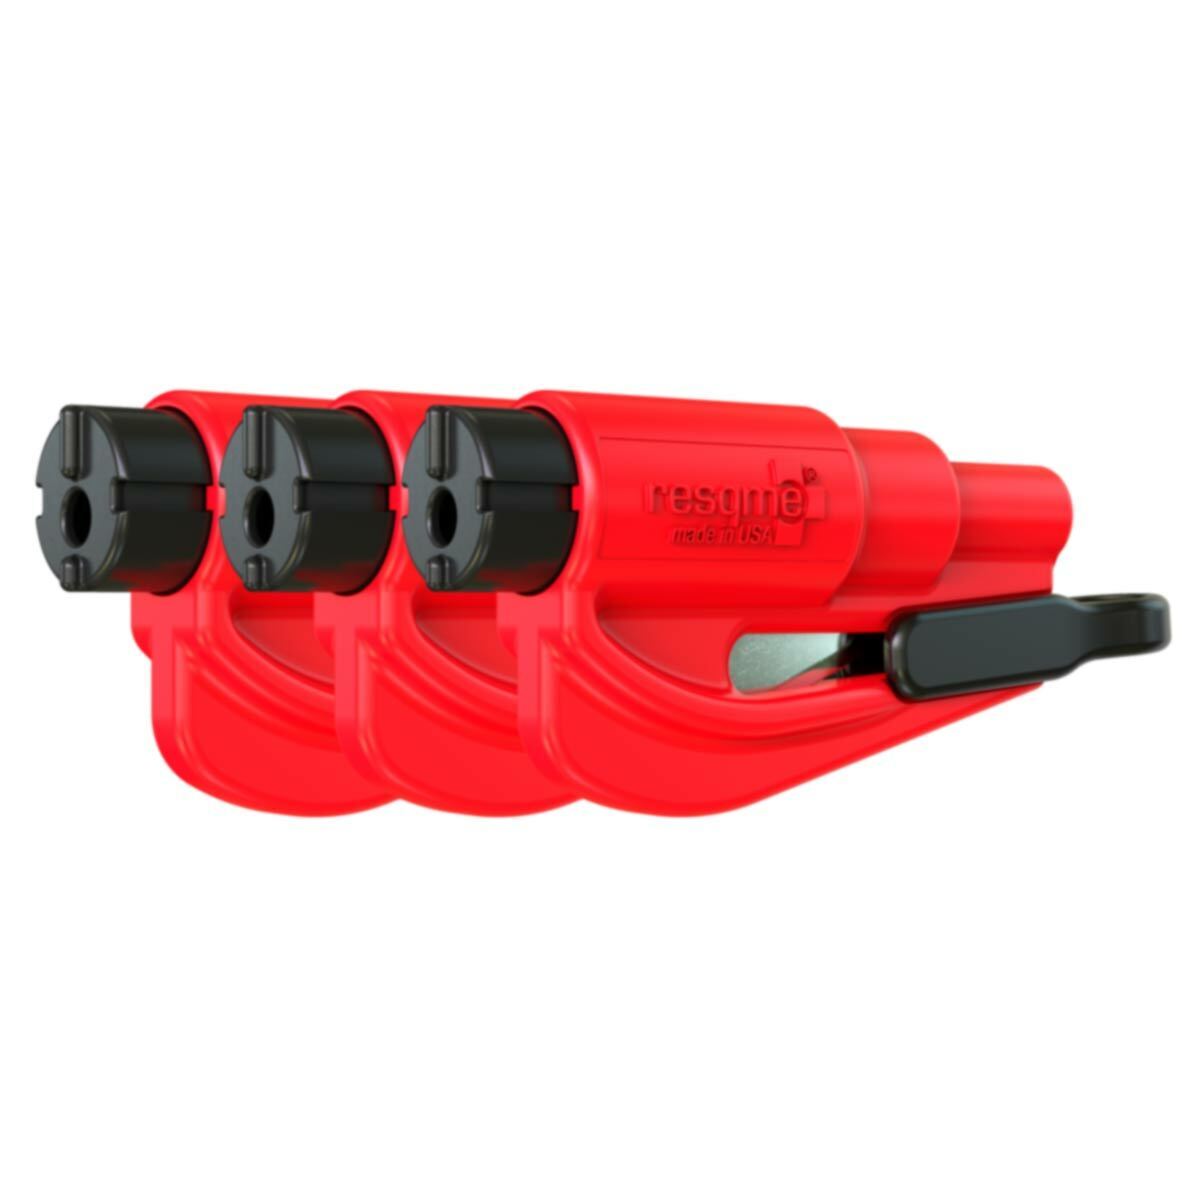 Resqme® Car Escape Tool - Red, 3 Pack, Seatbelt Cutter / Window Breaker